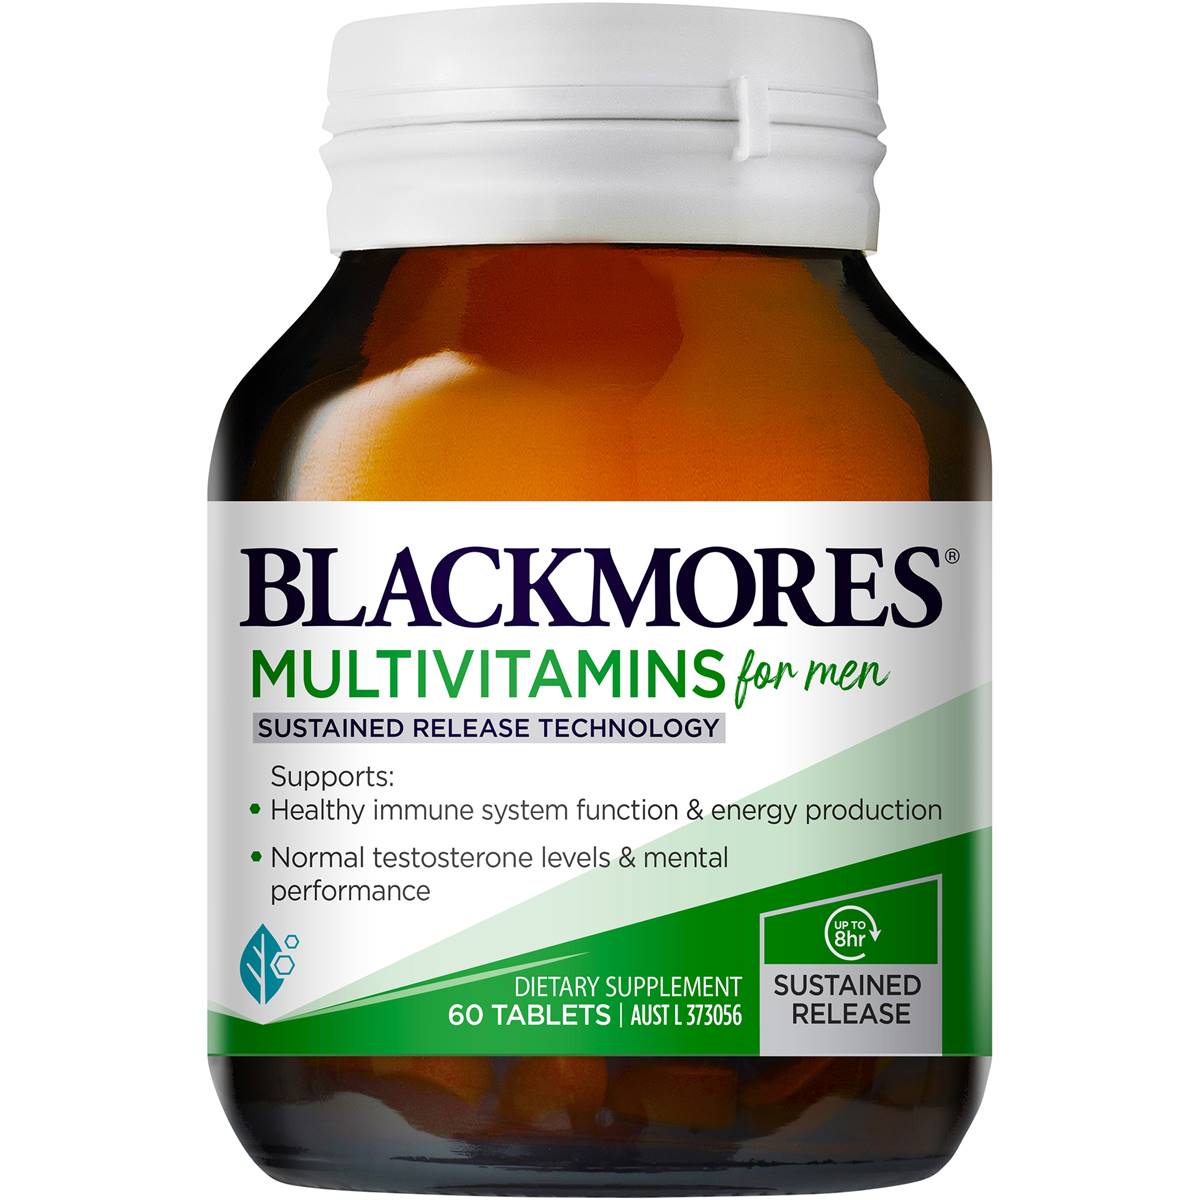 Blackmores Vitamin tổng hợp cho nam 60 viên - Thực phẩm bảo vệ sức khỏe